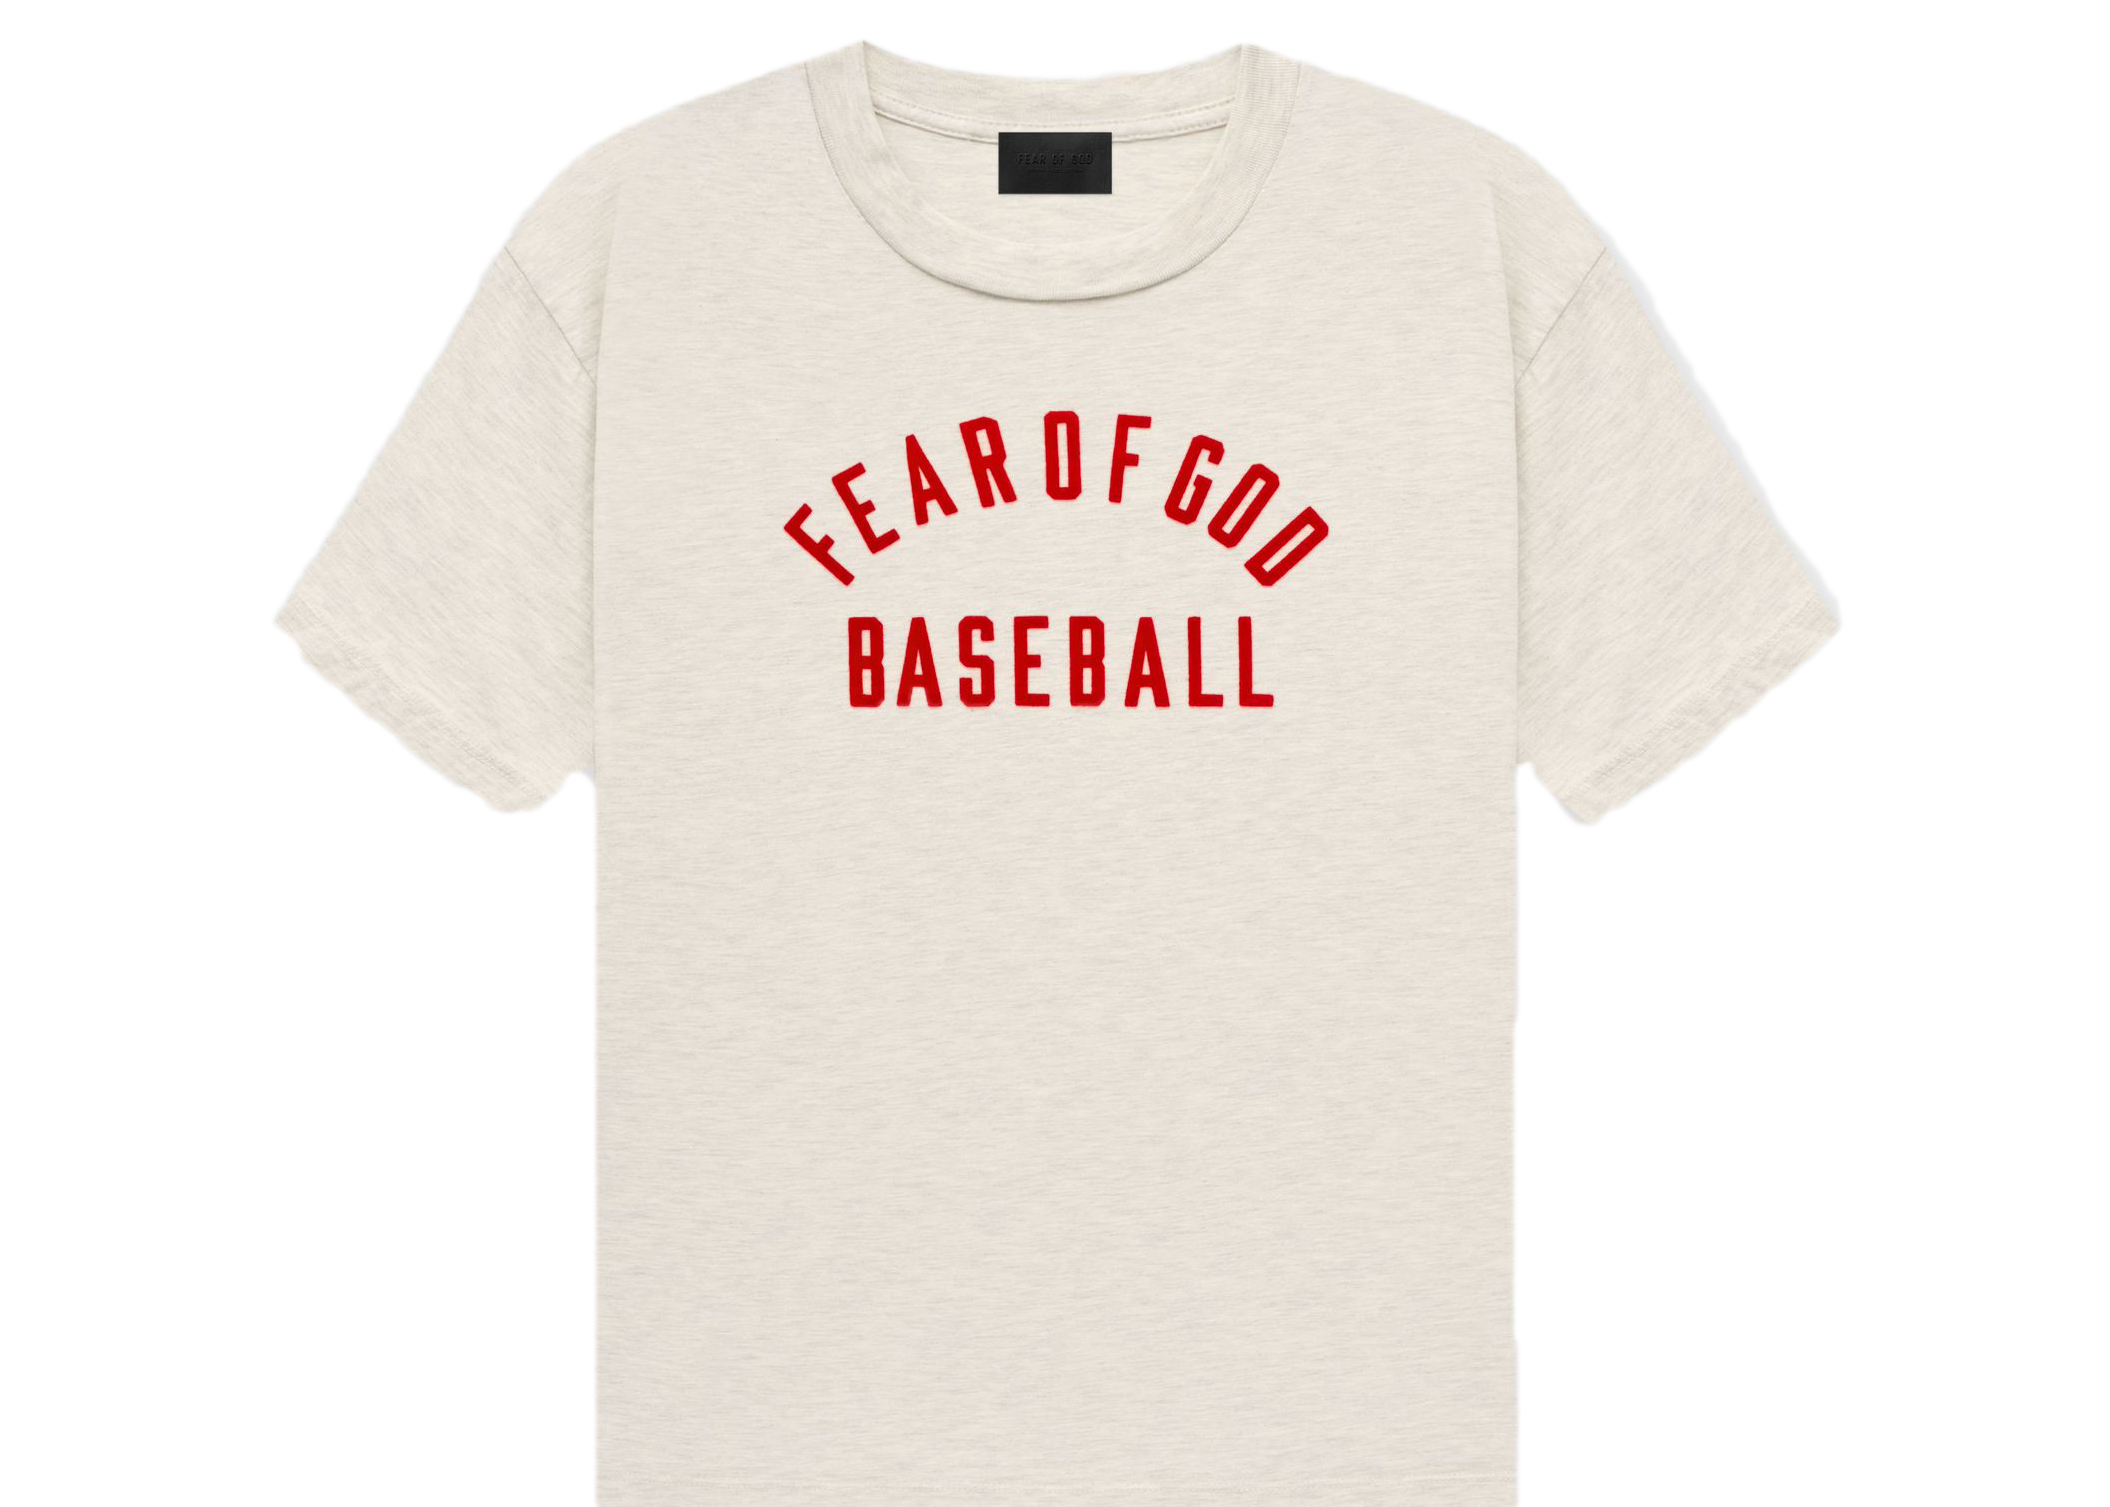 fearofgod 7th baseball TEE